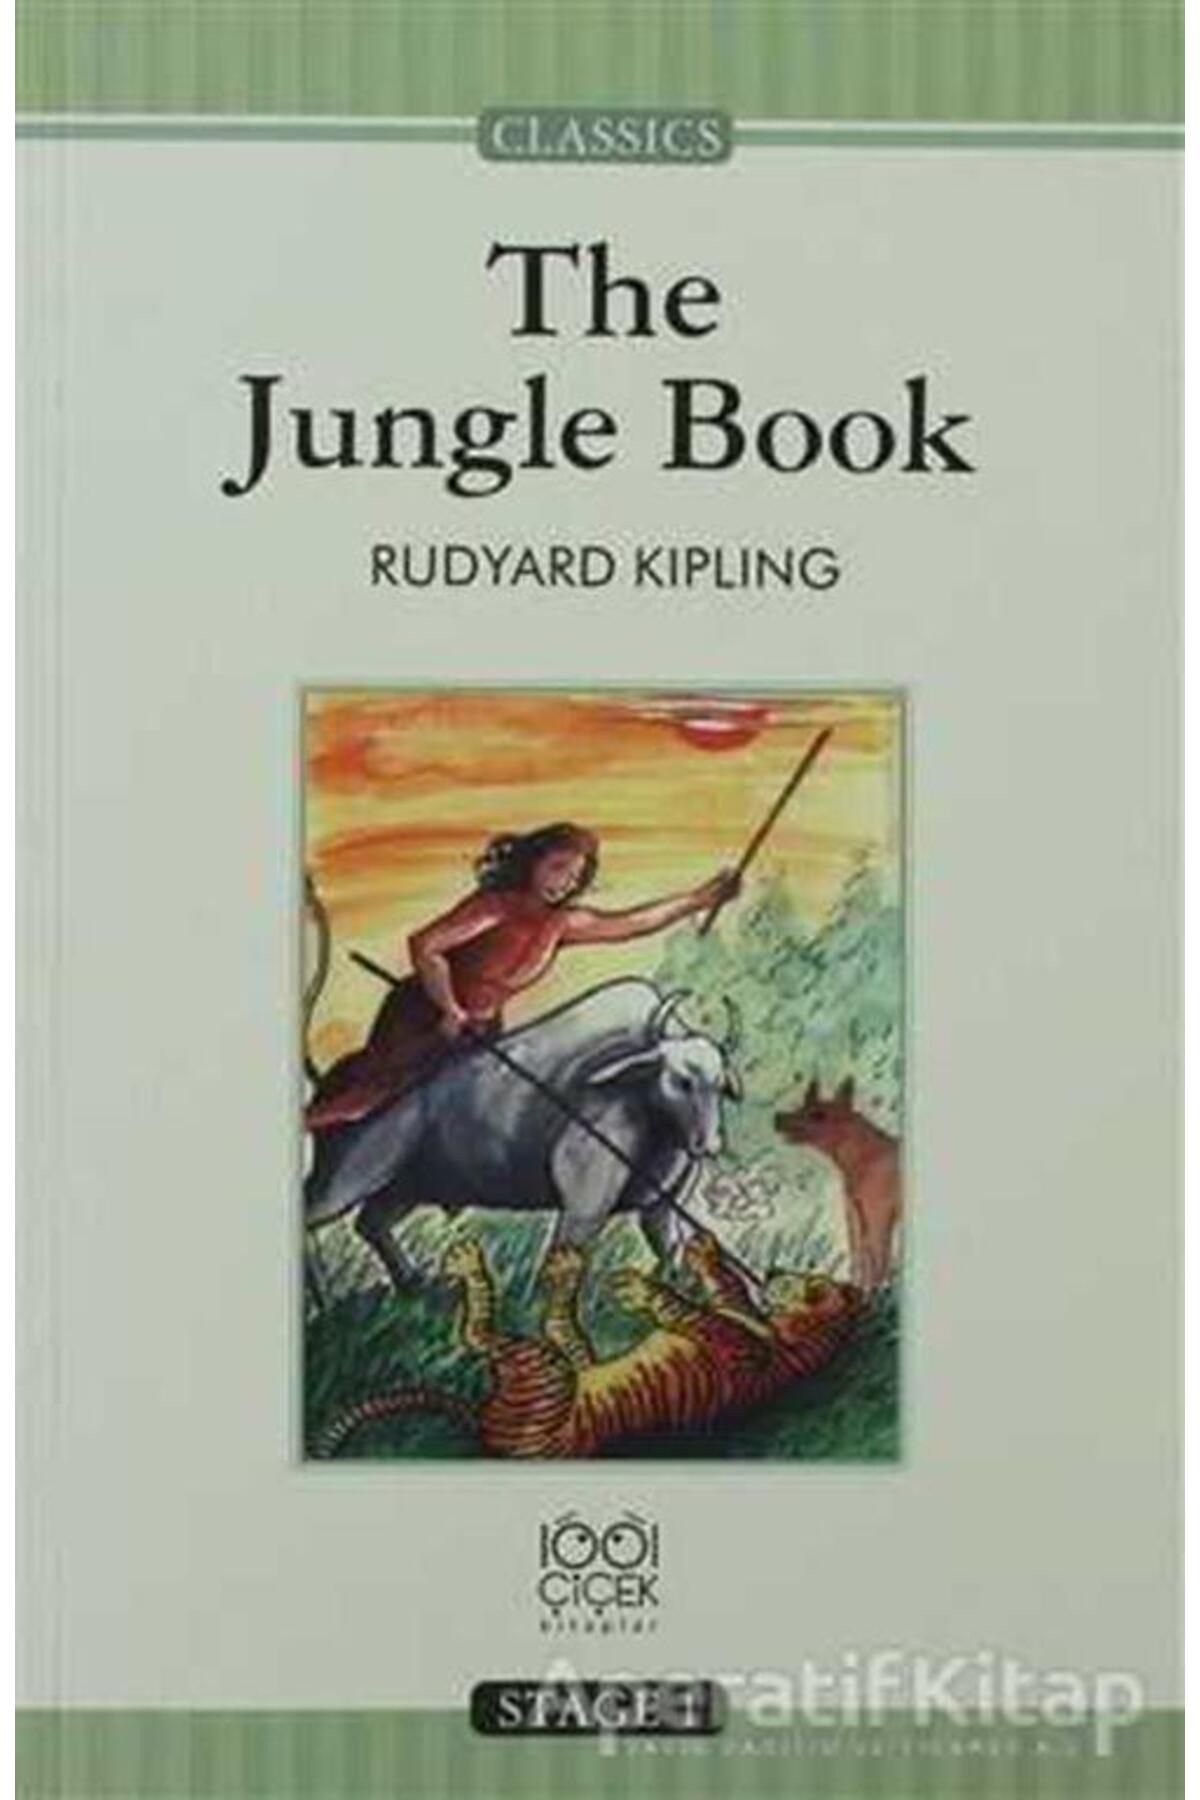 1001 Çiçek Kitaplar The Jungle Book ( Stage 1) - Rudyard Kipling - 1001 Çiçek Kitaplar